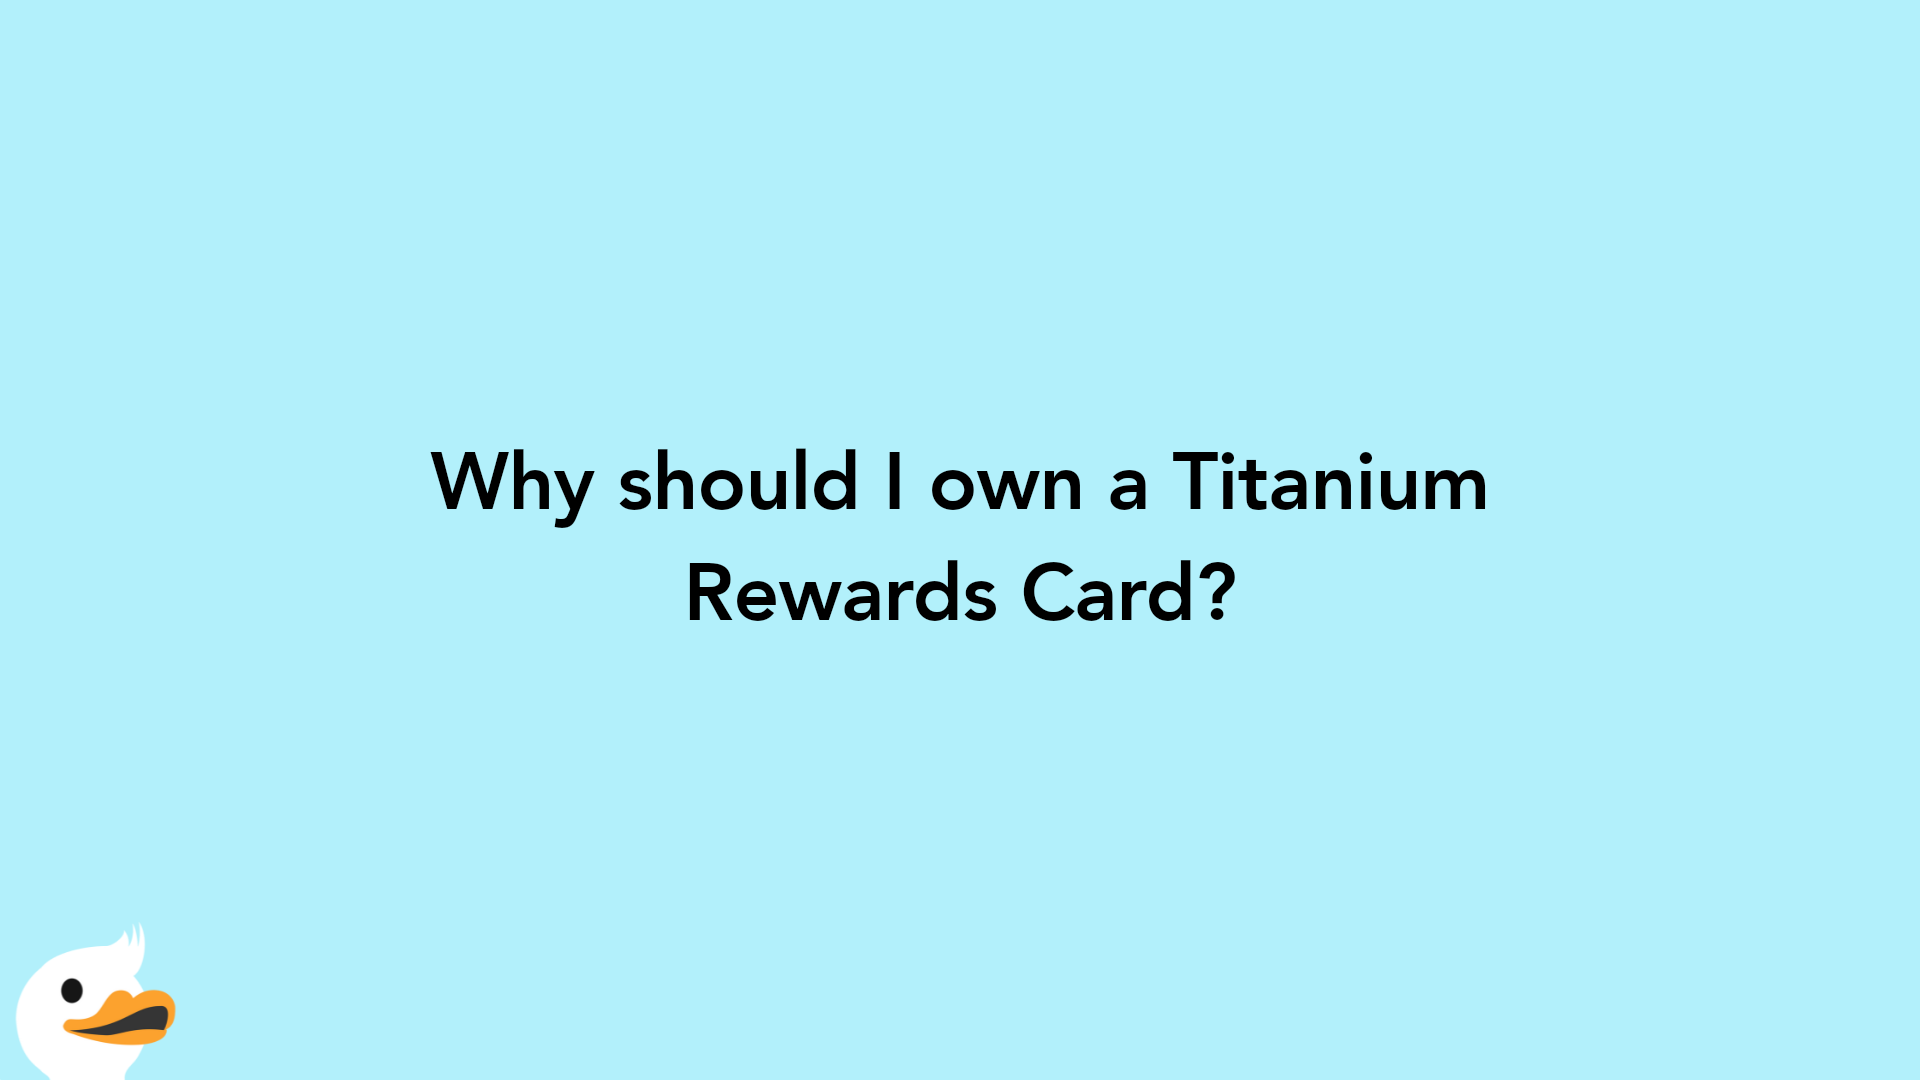 Why should I own a Titanium Rewards Card?